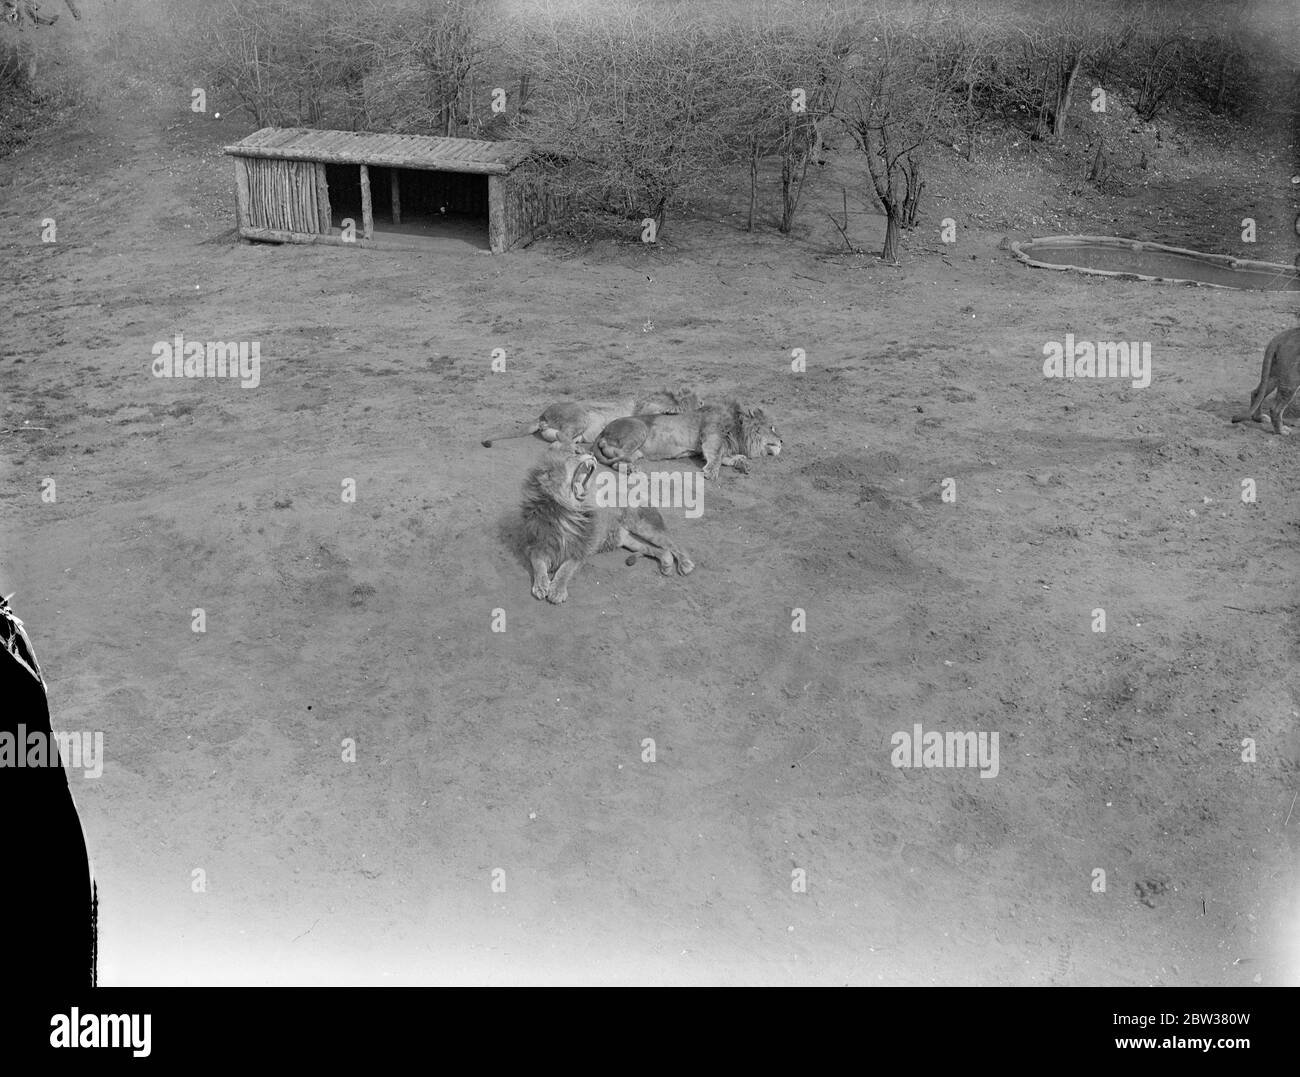 Demasiado caliente para los leones de Whipsnade. El sol era tan cálido en el zoológico de Whipsnade que los leones renunciaron a la acción vigorosa para el día y se complacieron en un largo snooze. Las fotos muestran, los leones de Whipsnade que se exhibieron en el calor. 13 de abril de 1933 30s, 30s, 30s, 30s, 30s, 30s, 1930s Foto de stock